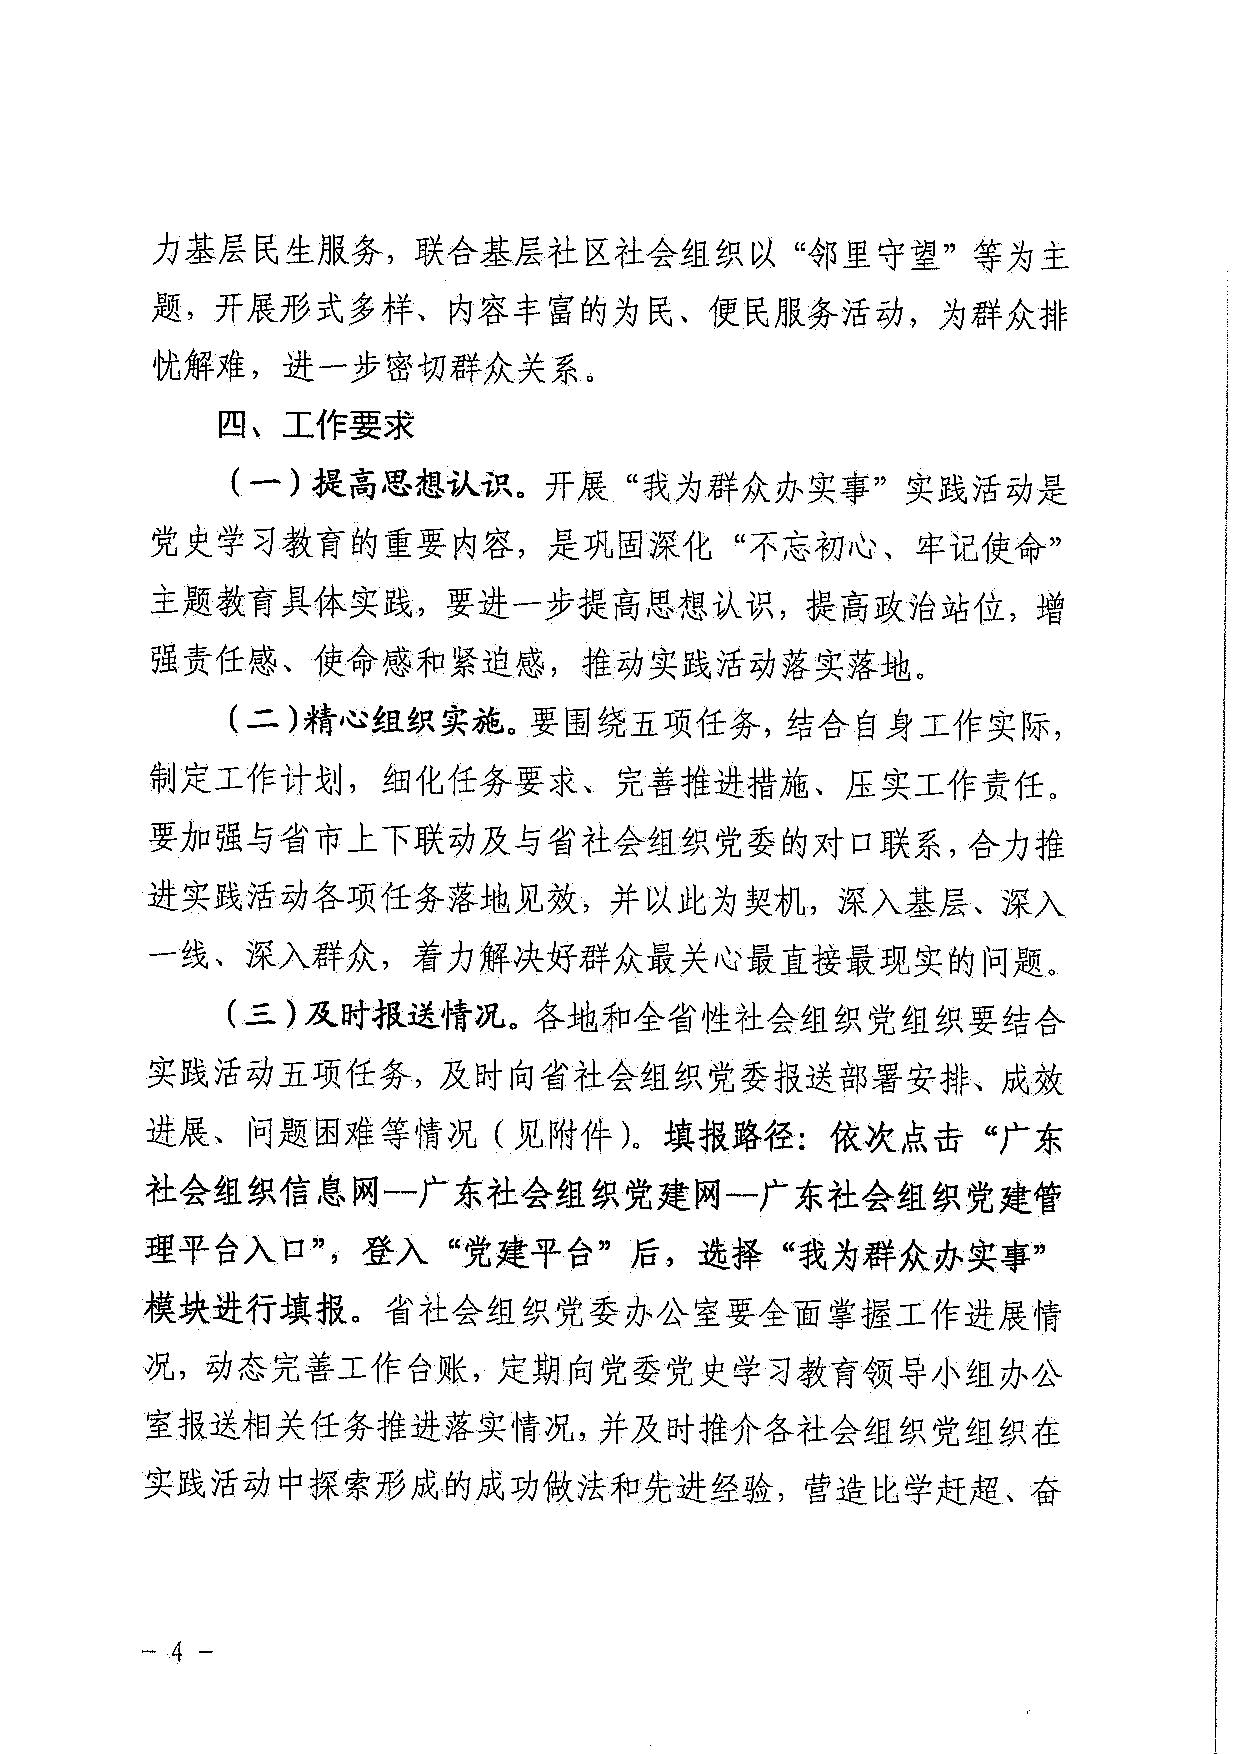 中共广东省社会组织委员会关于组织开展“我为群众办实事”实践活动的通知_4.jpg